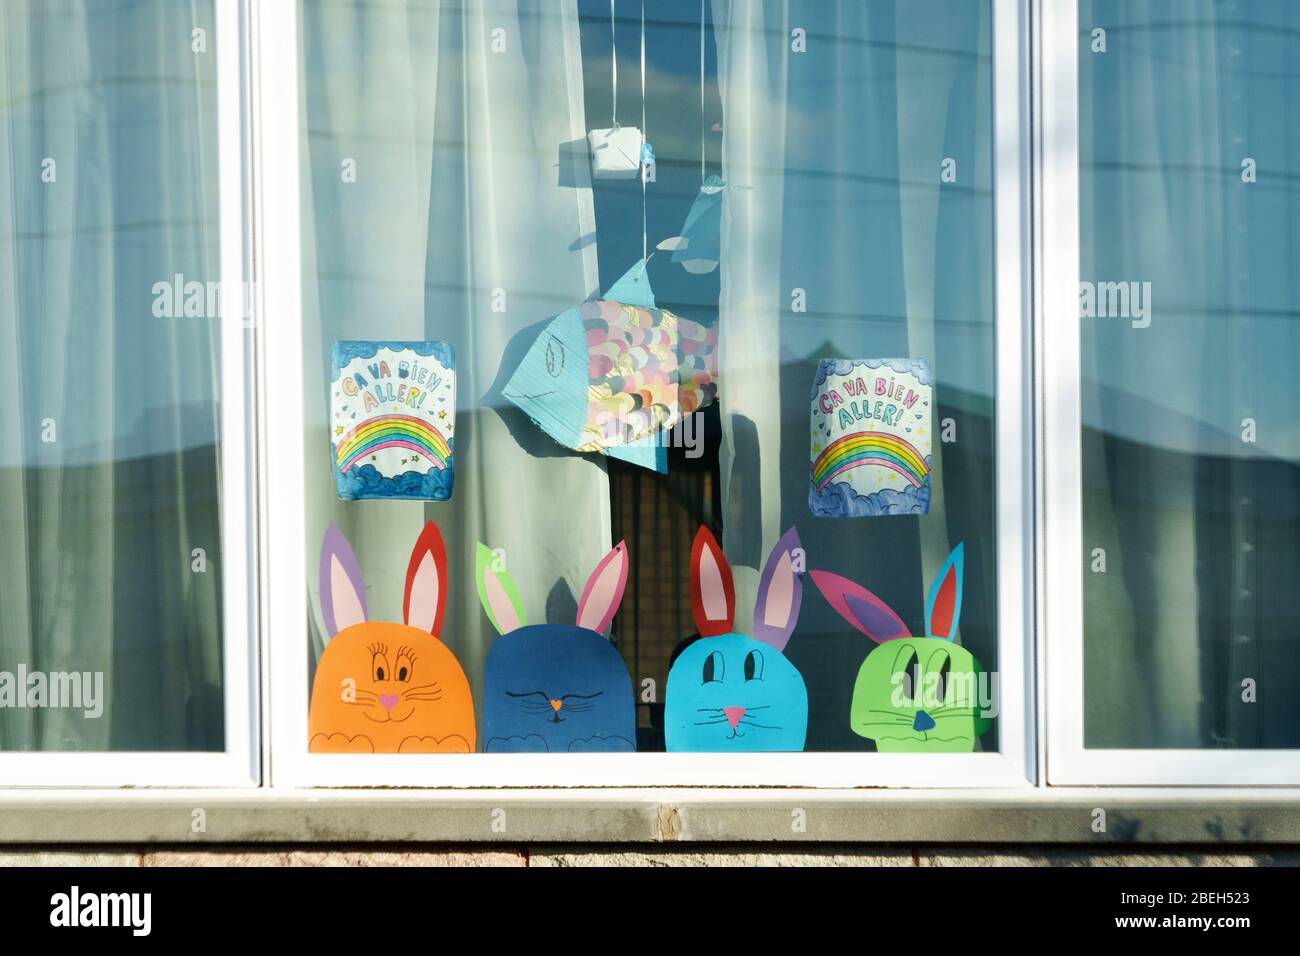 Ça va bien aller mensaje con los dibujos del arco iris y del conejito de Pascua en una ventana durante la pandemia de Covid 19 en la provincia de Quebec, Canadá. Foto de stock